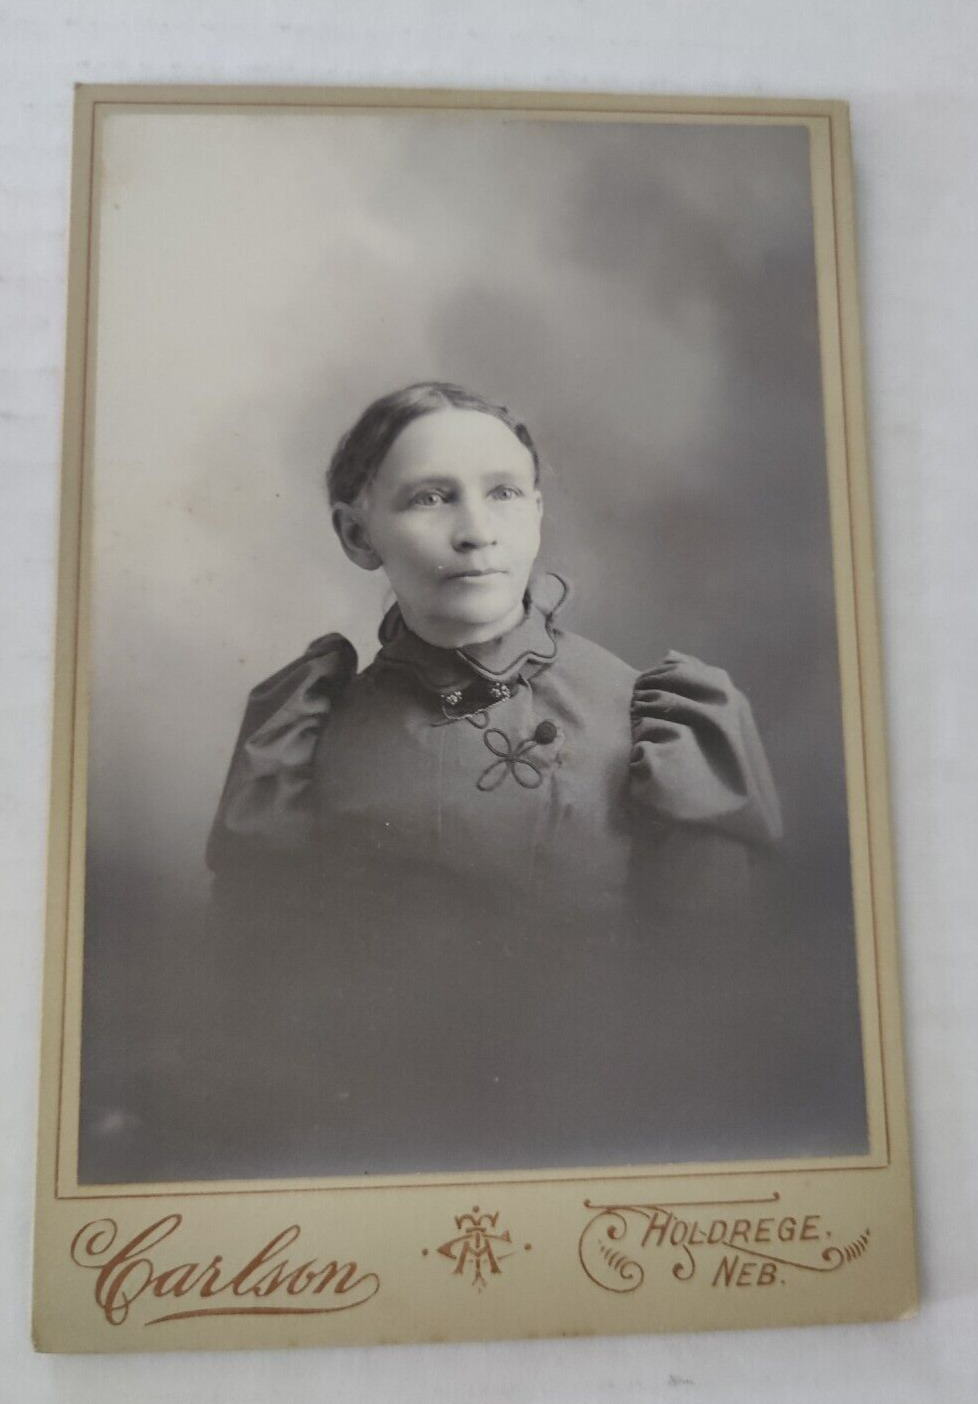 Vintage Cabinet Card Woman in Black Dress by Carlson in Holdrege, Nebraska